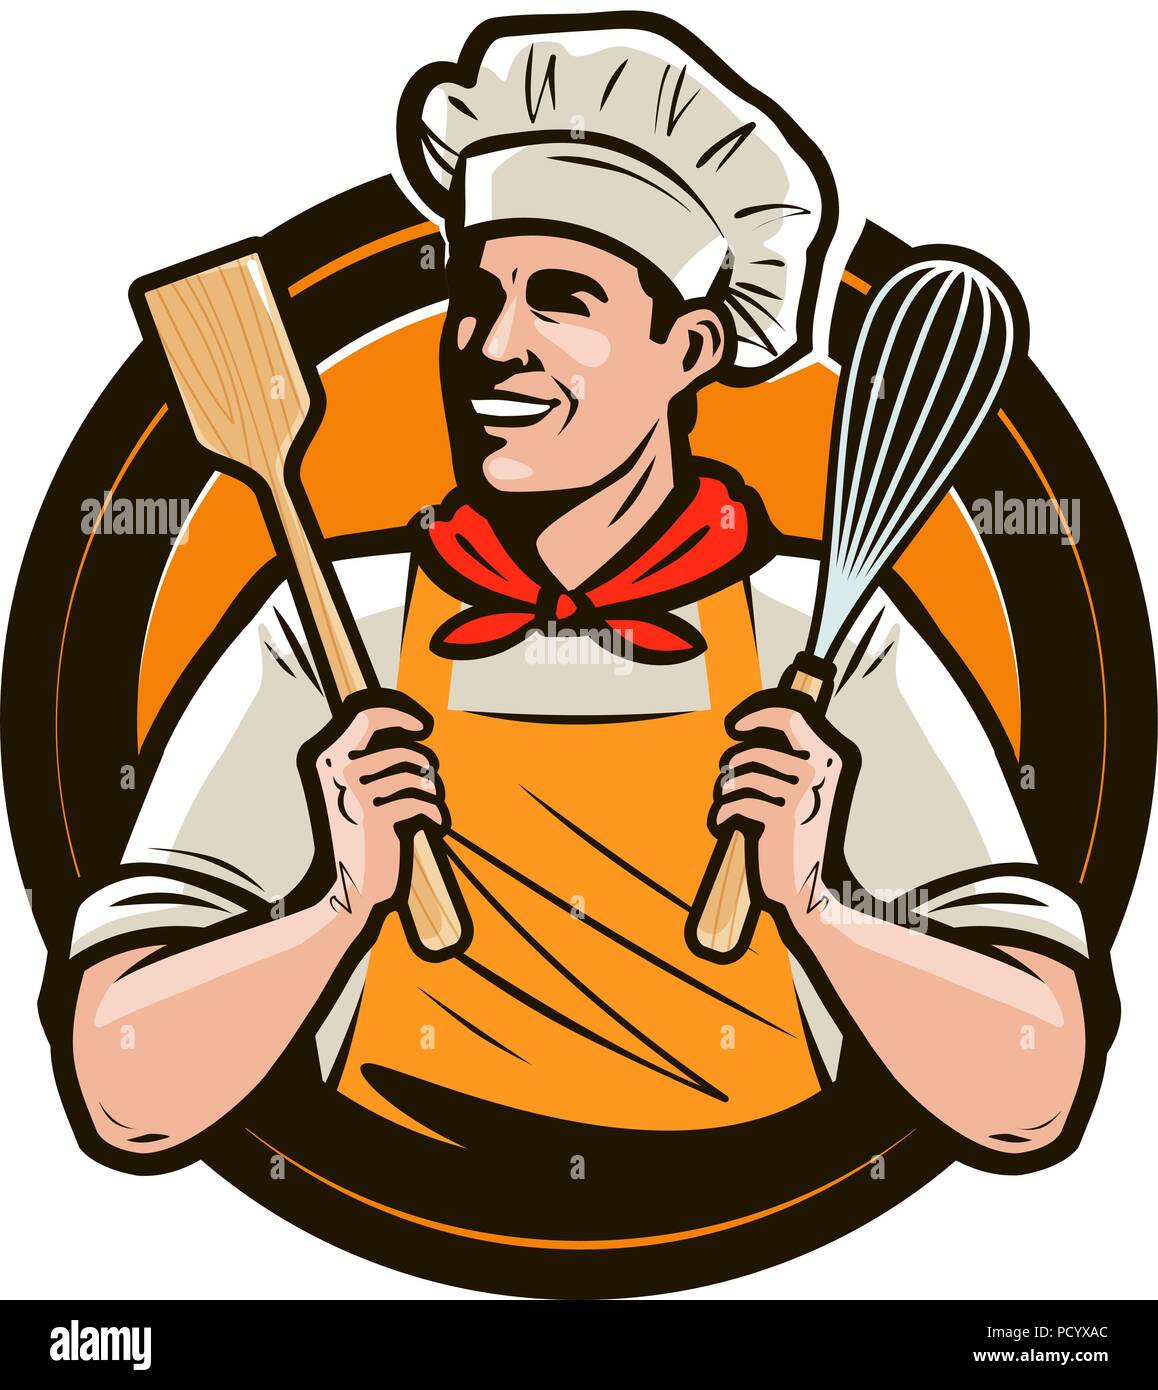 Bäckerei, bakeshop Logo oder Label. Gerne Kochen hält eine Schaufel und einem schneebesen in der Hand. Vector Illustration Stock Vektor